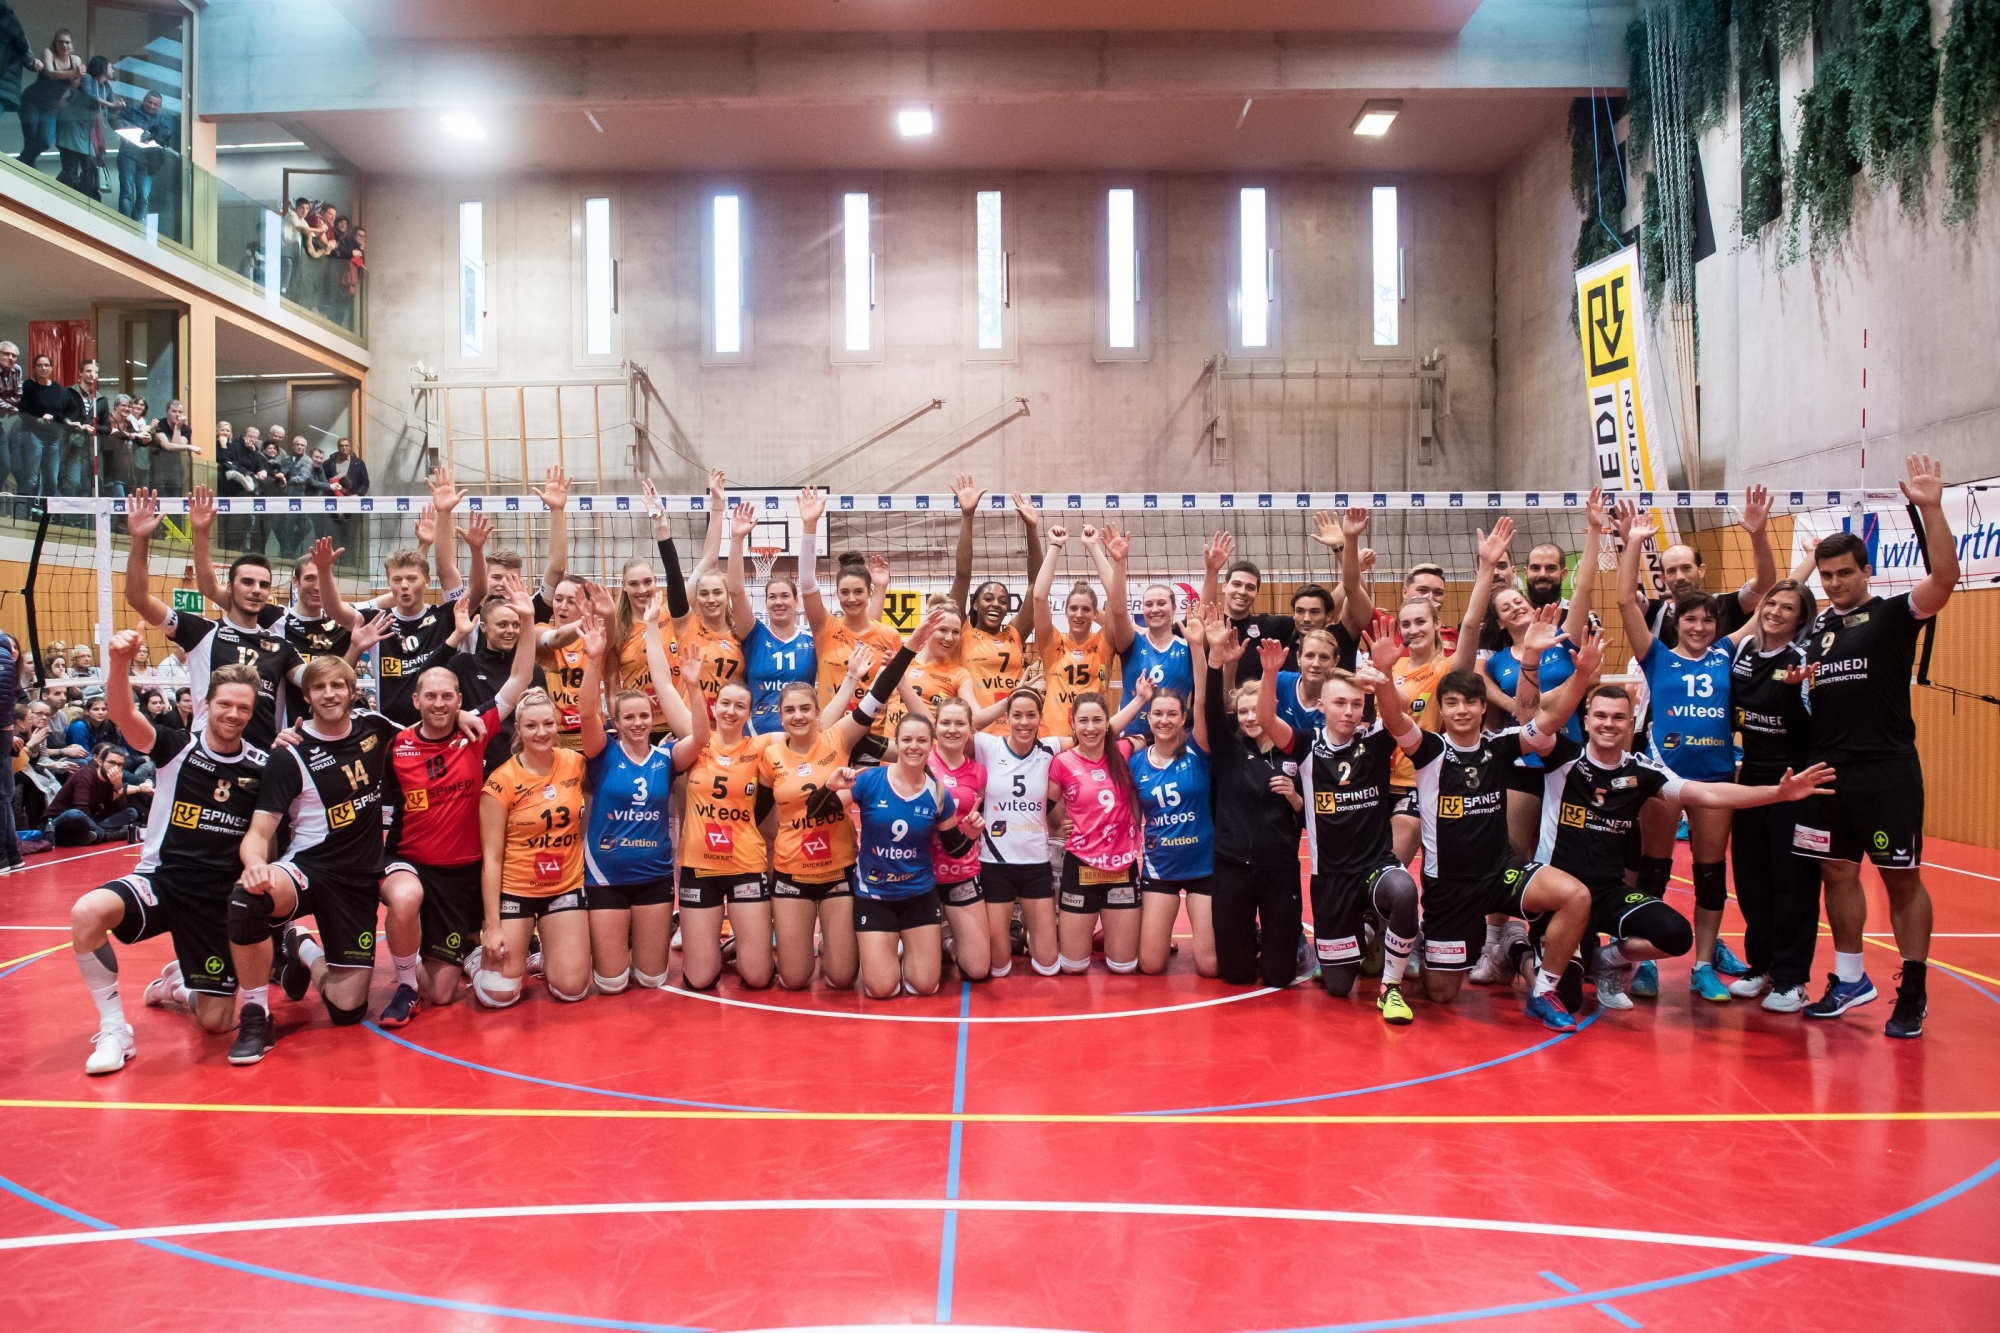 1/8 de finale Coupe suisse volleyball : NUC - Val-de-Ruz

Colombier, le 12 janvier 2019
Photo : Lucas Vuitel